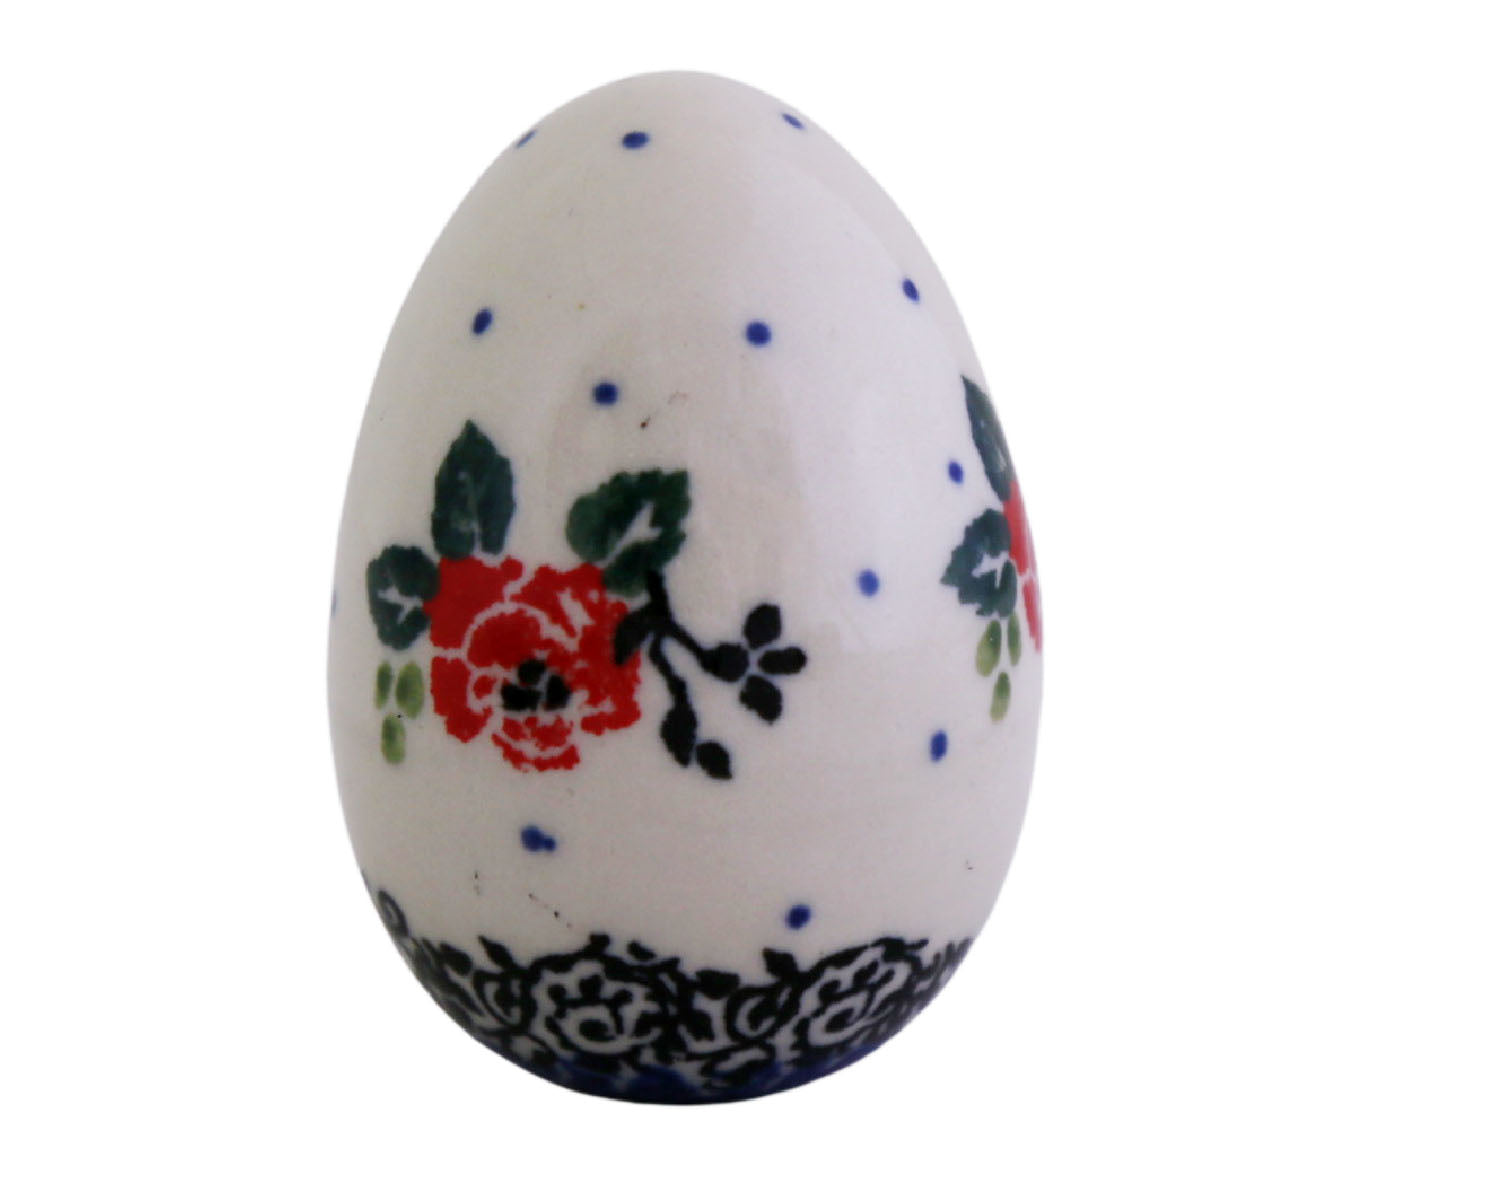 Egg Figure